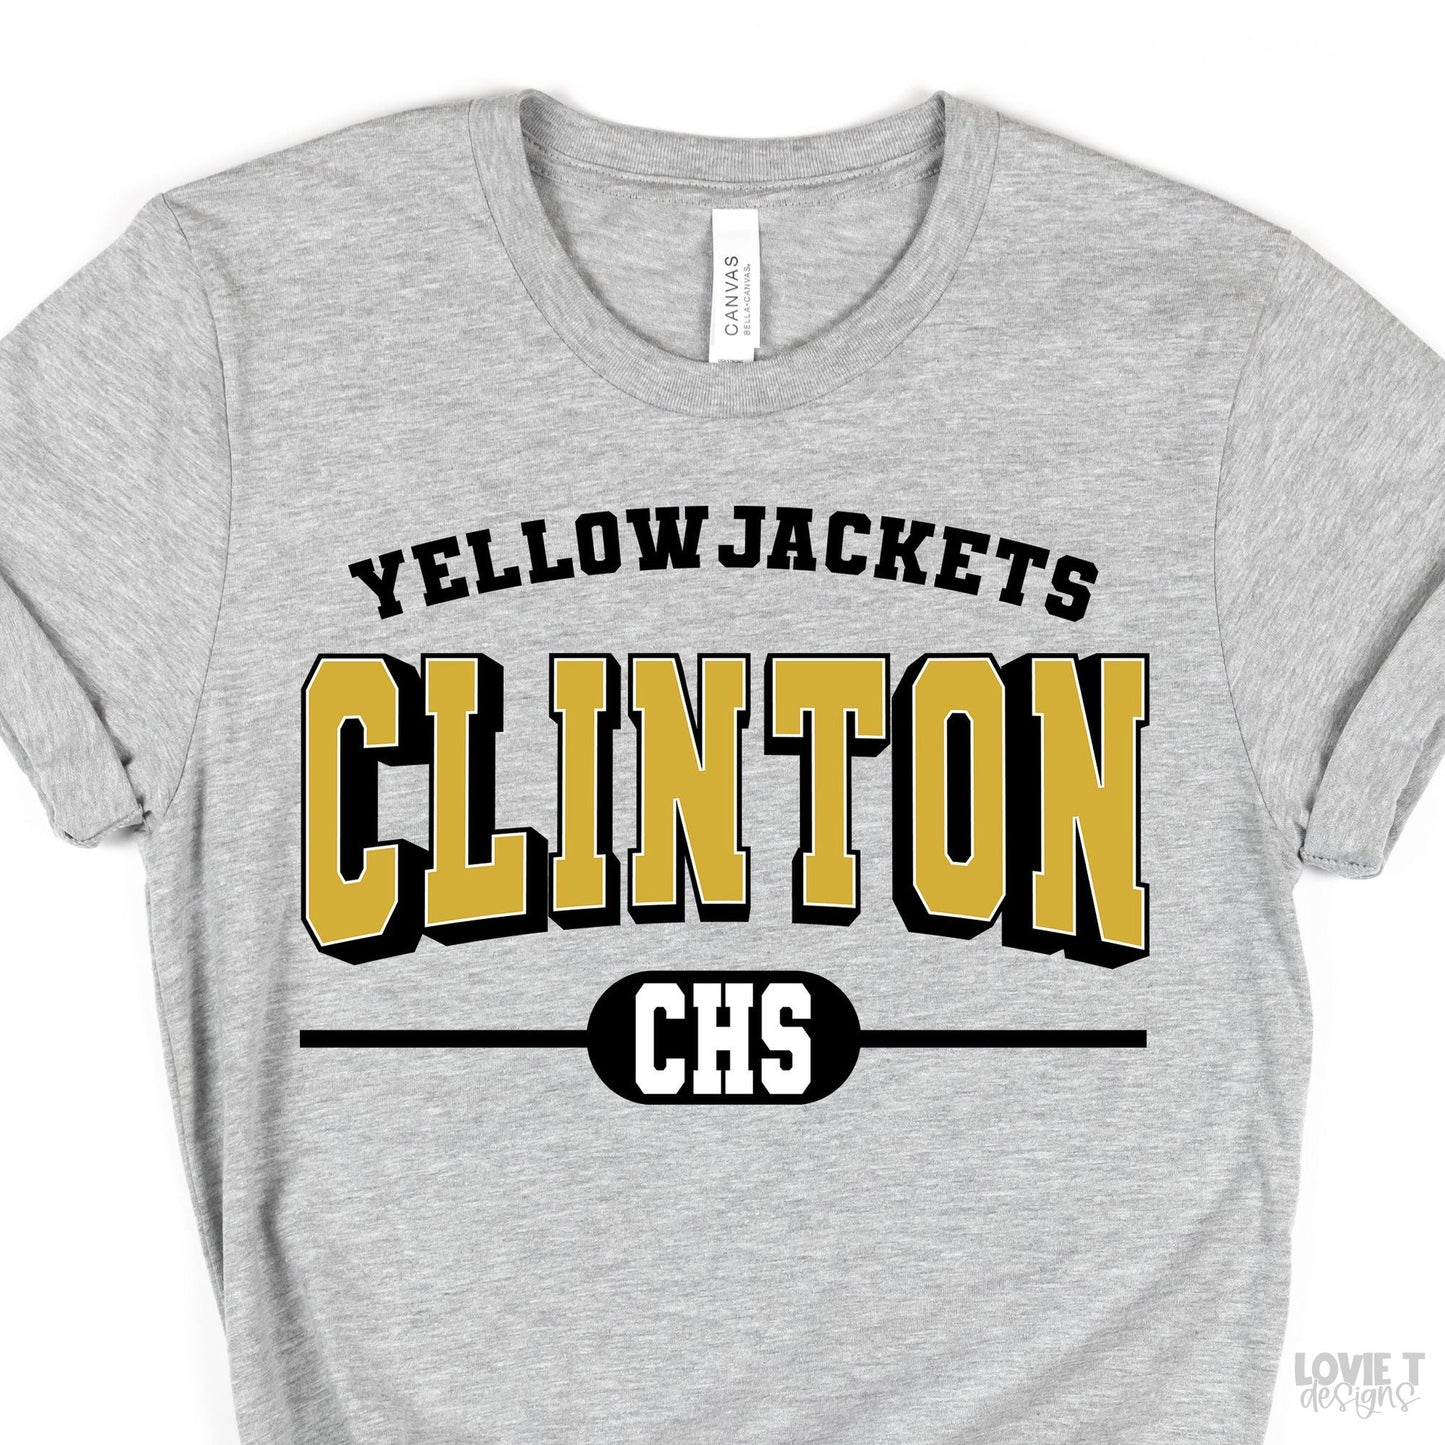 Clinton Yellow Jackets